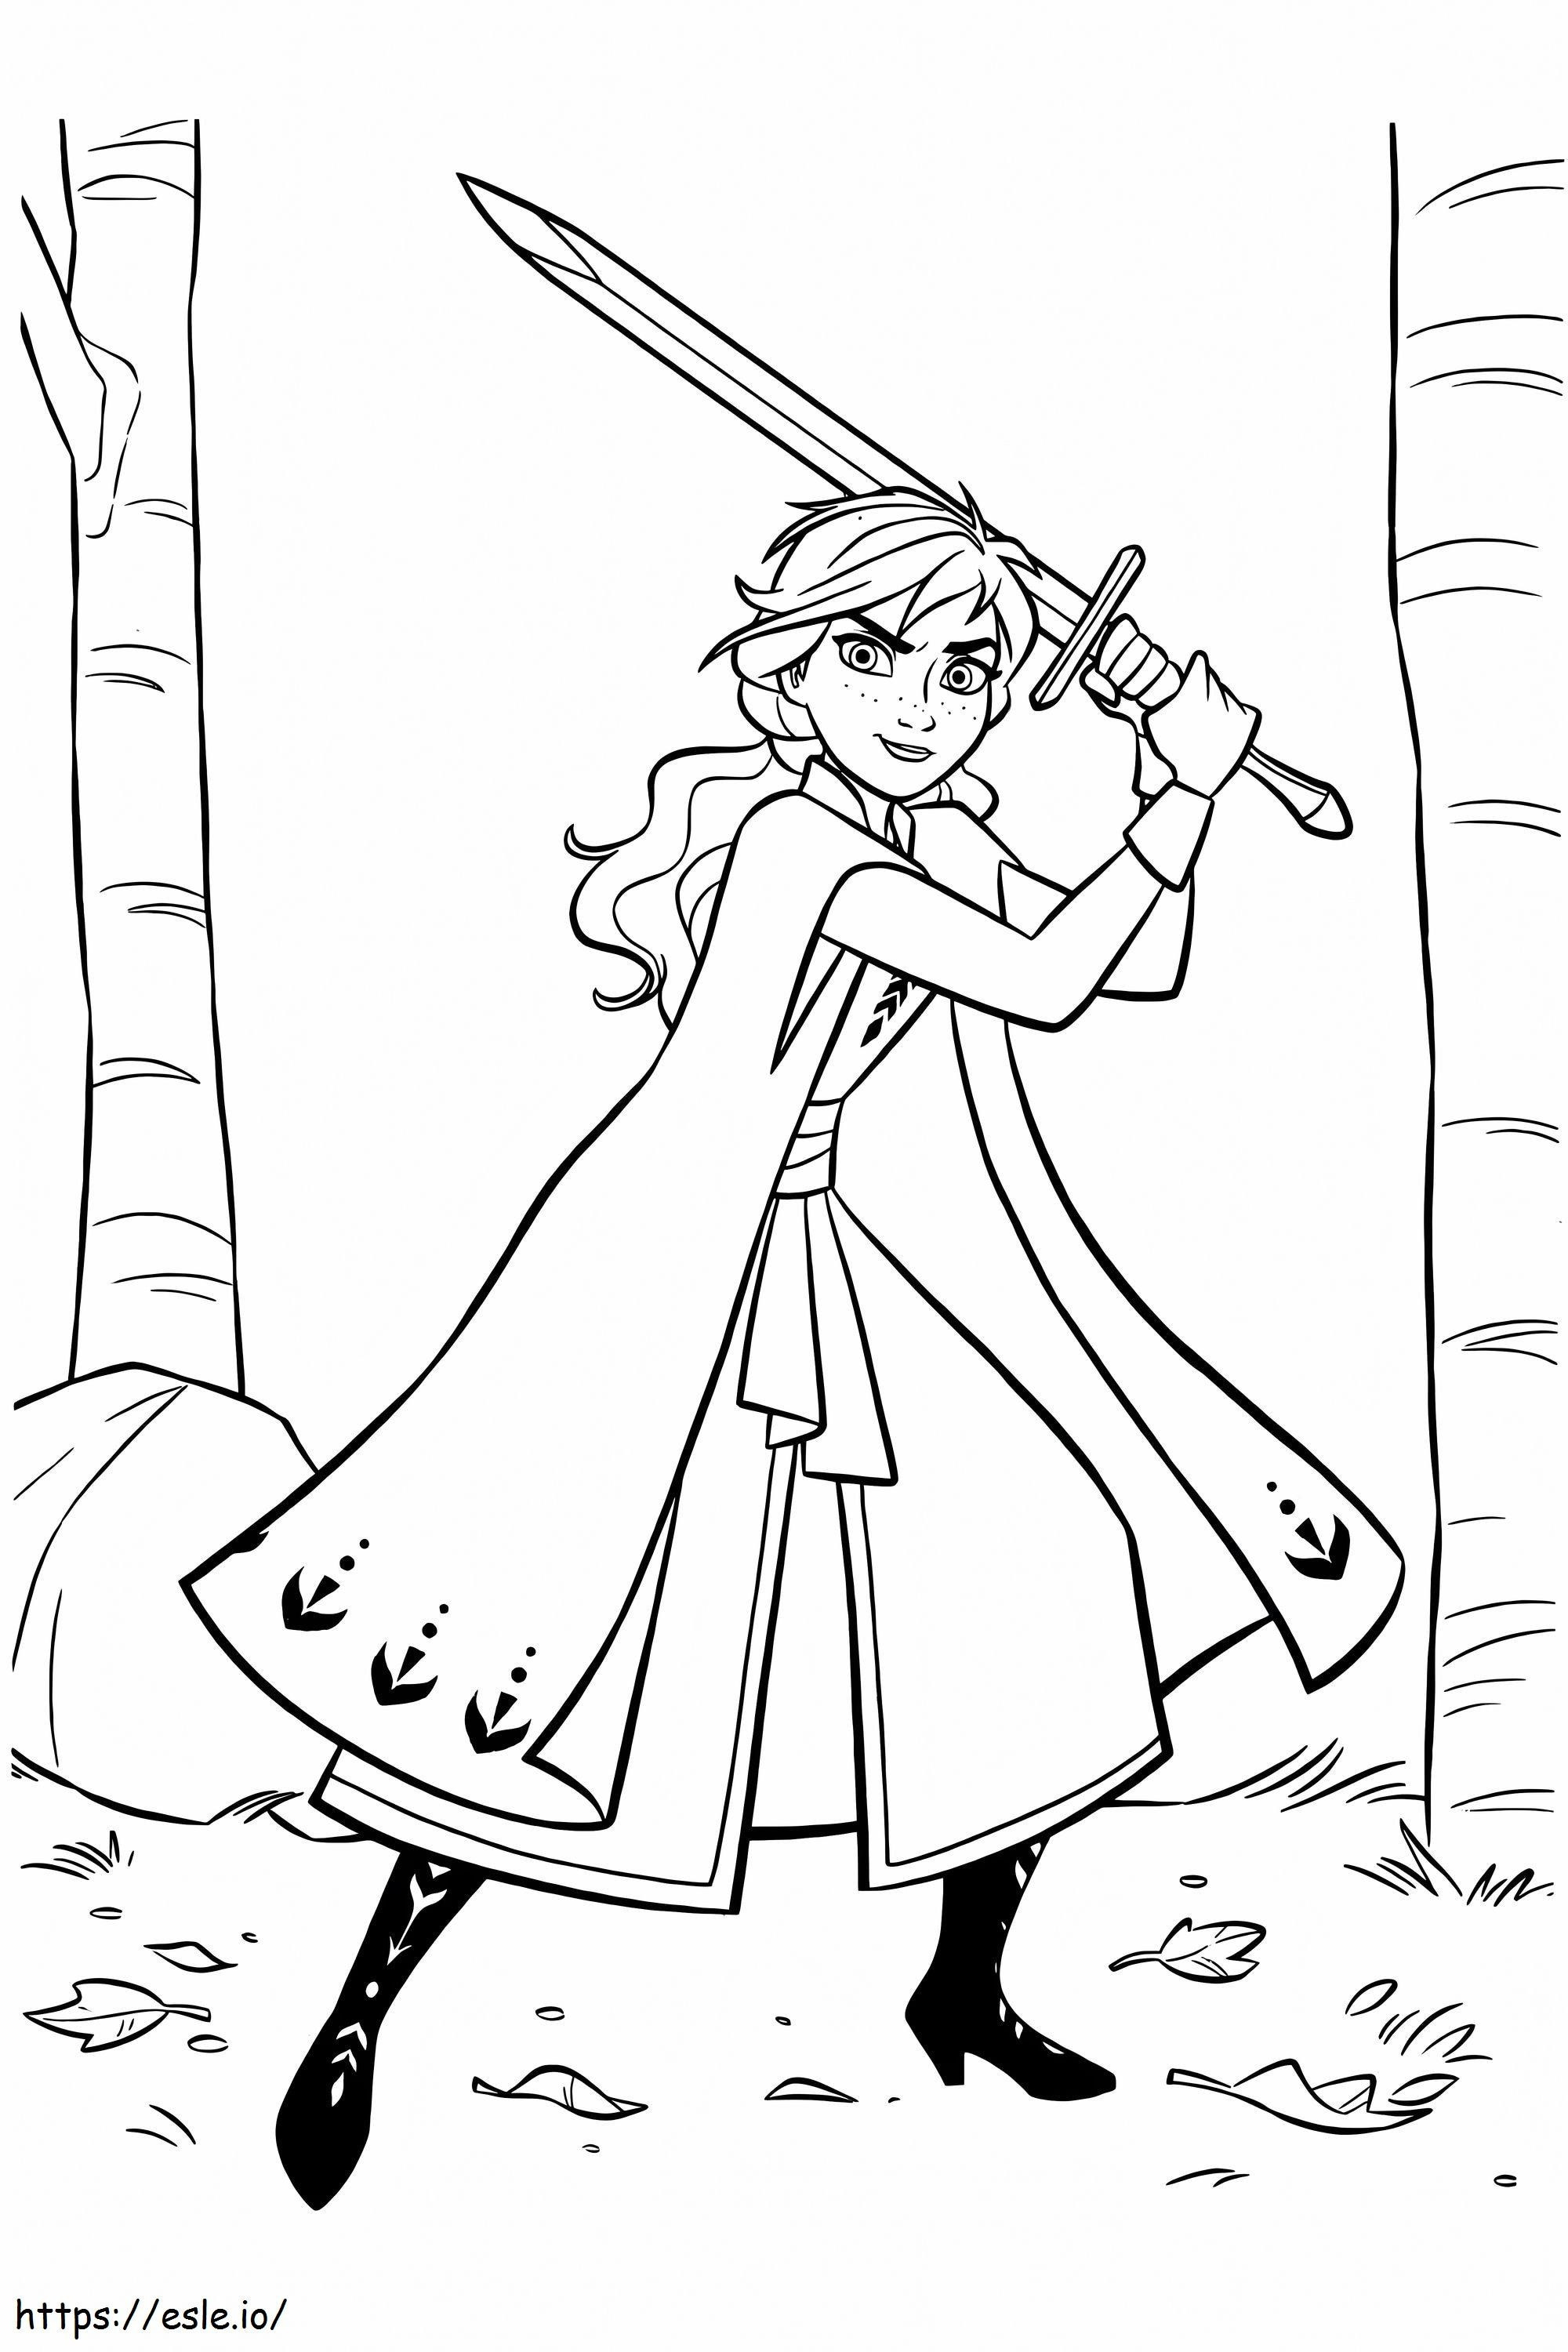 Anna con la spada da colorare